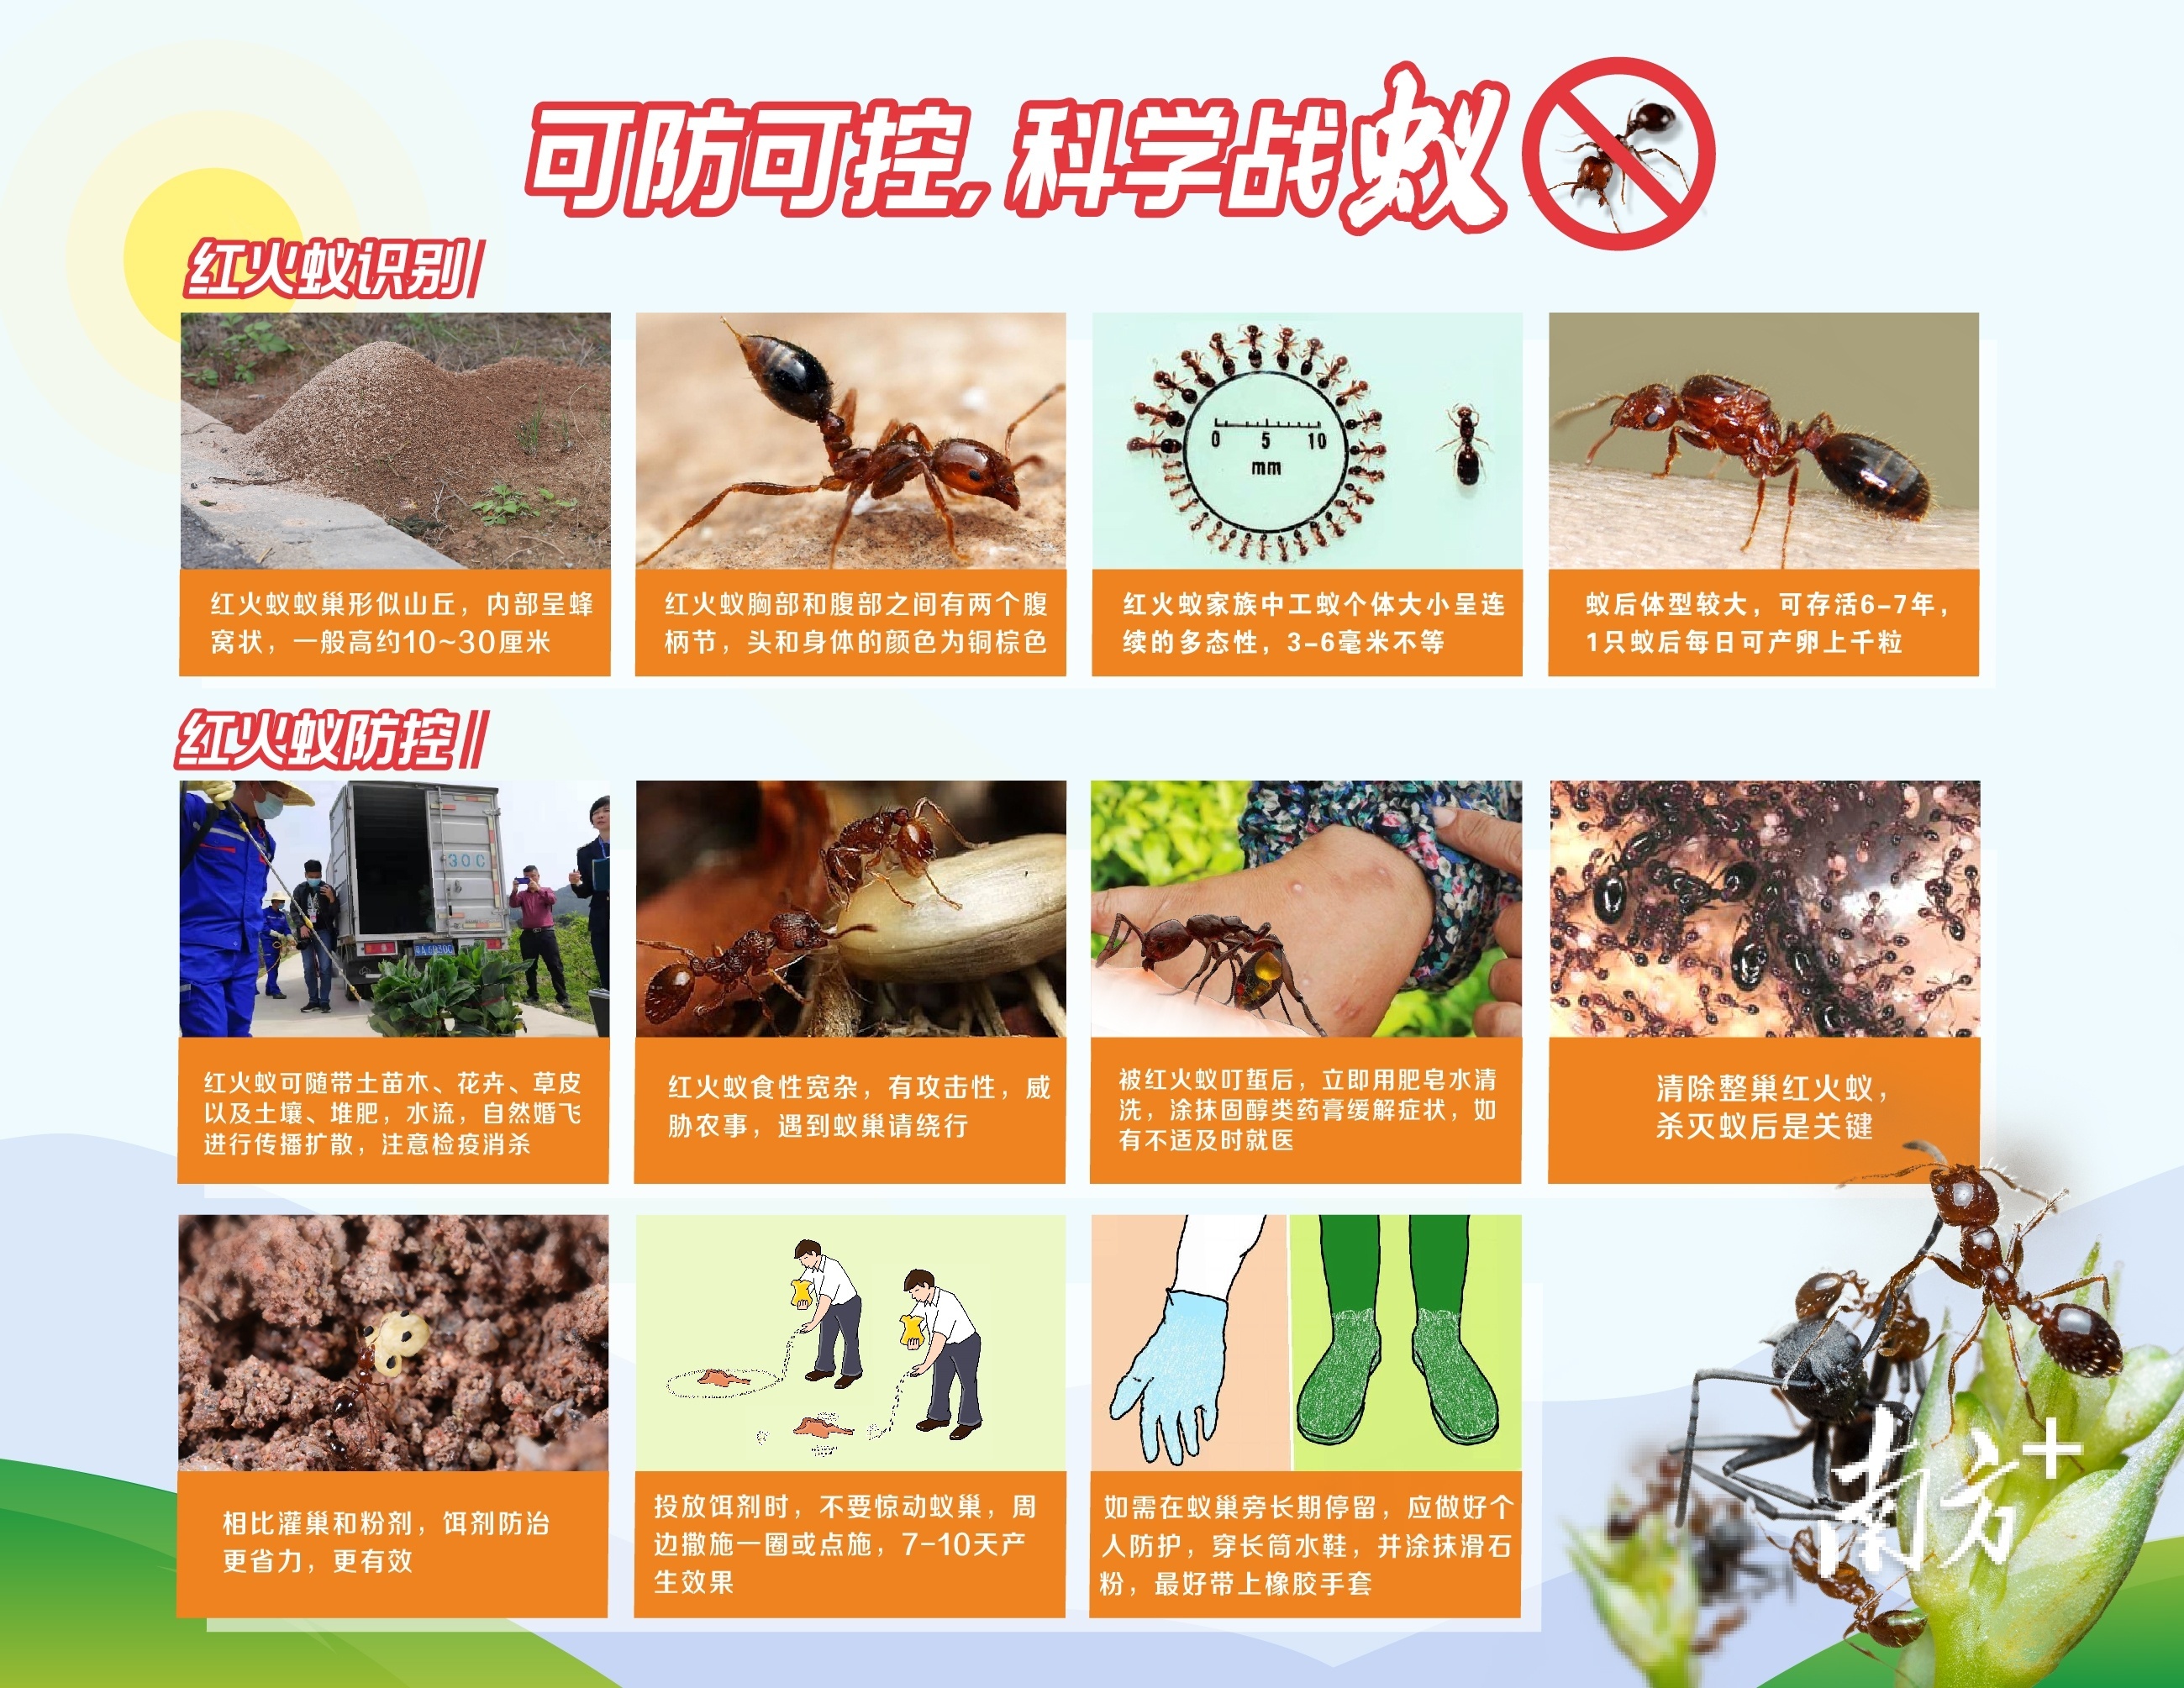 红火蚁宣传标语内容图片